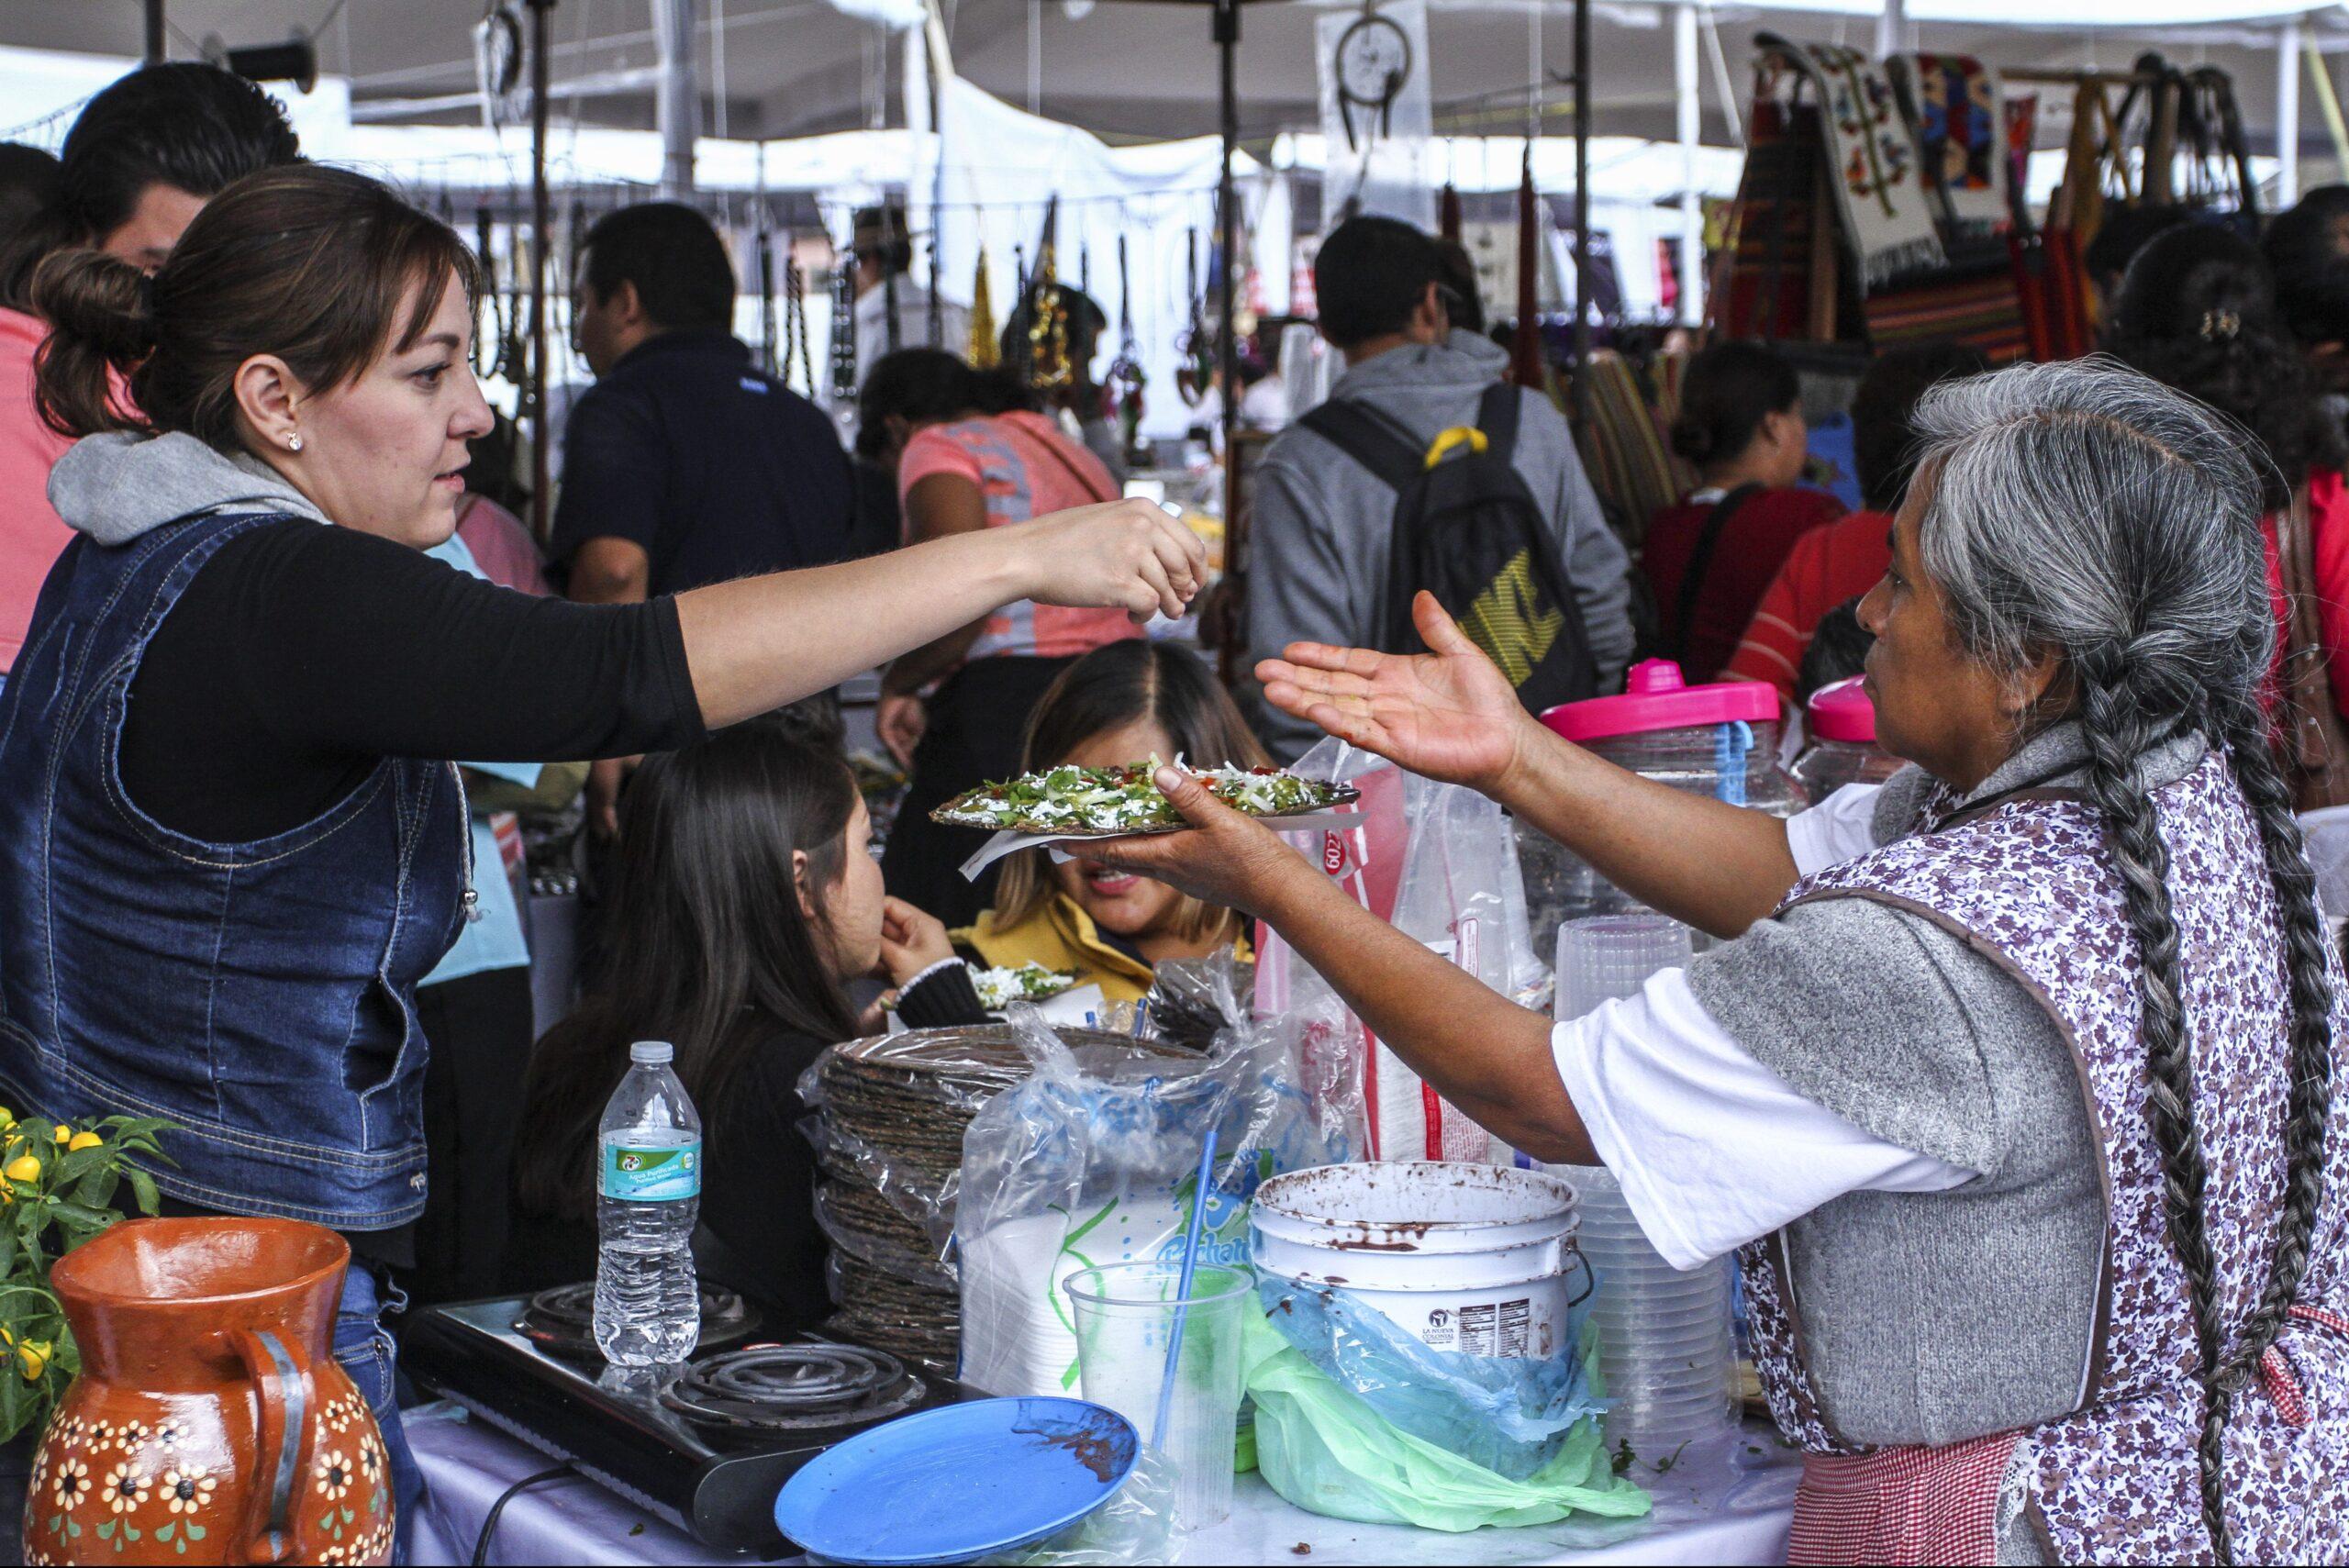 Desnutrición y obesidad cuestan a México más de 28 millones de dólares al año: Cepal